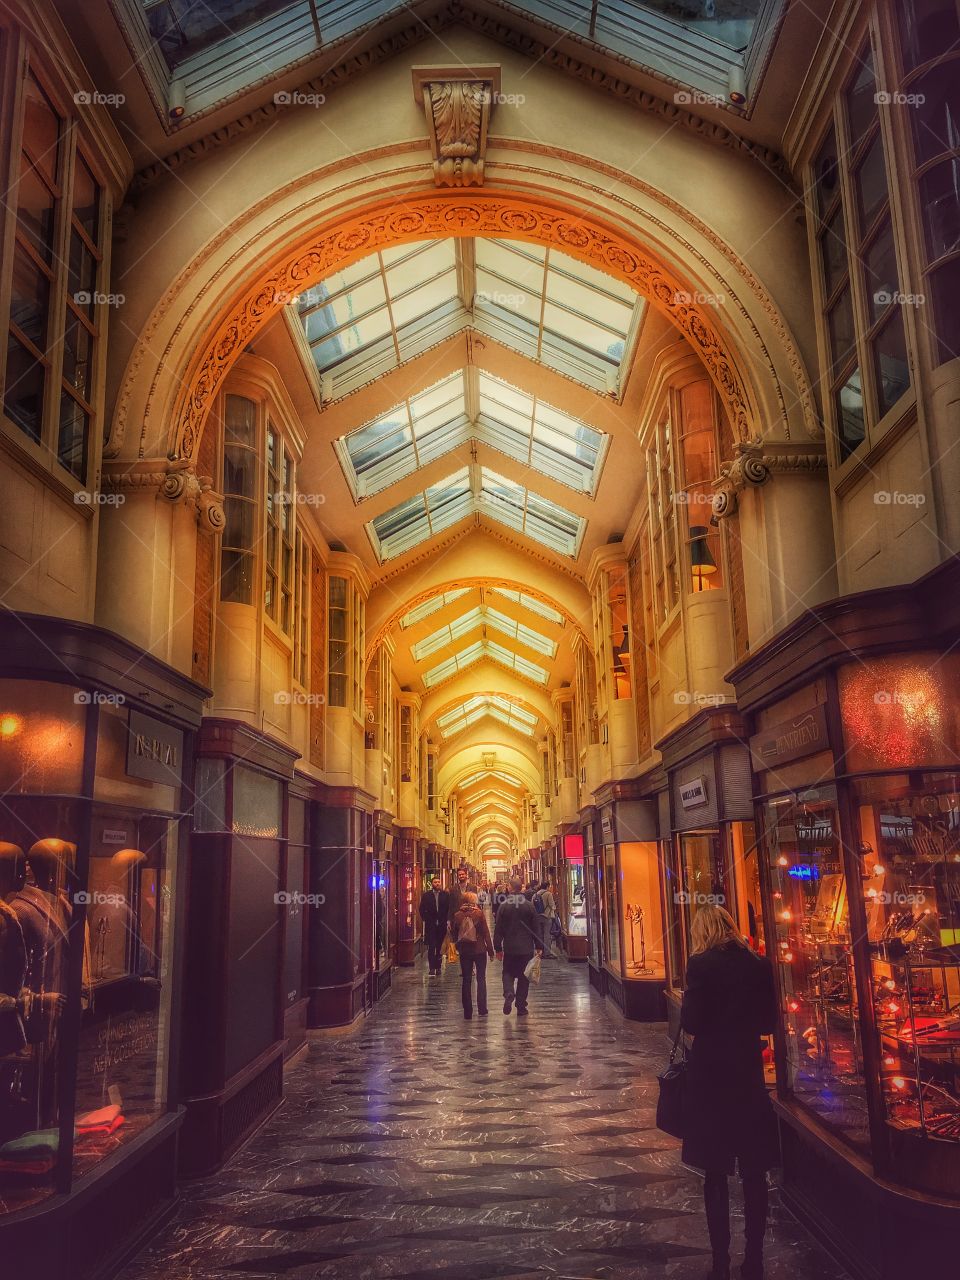 Burlington Arcade in London 